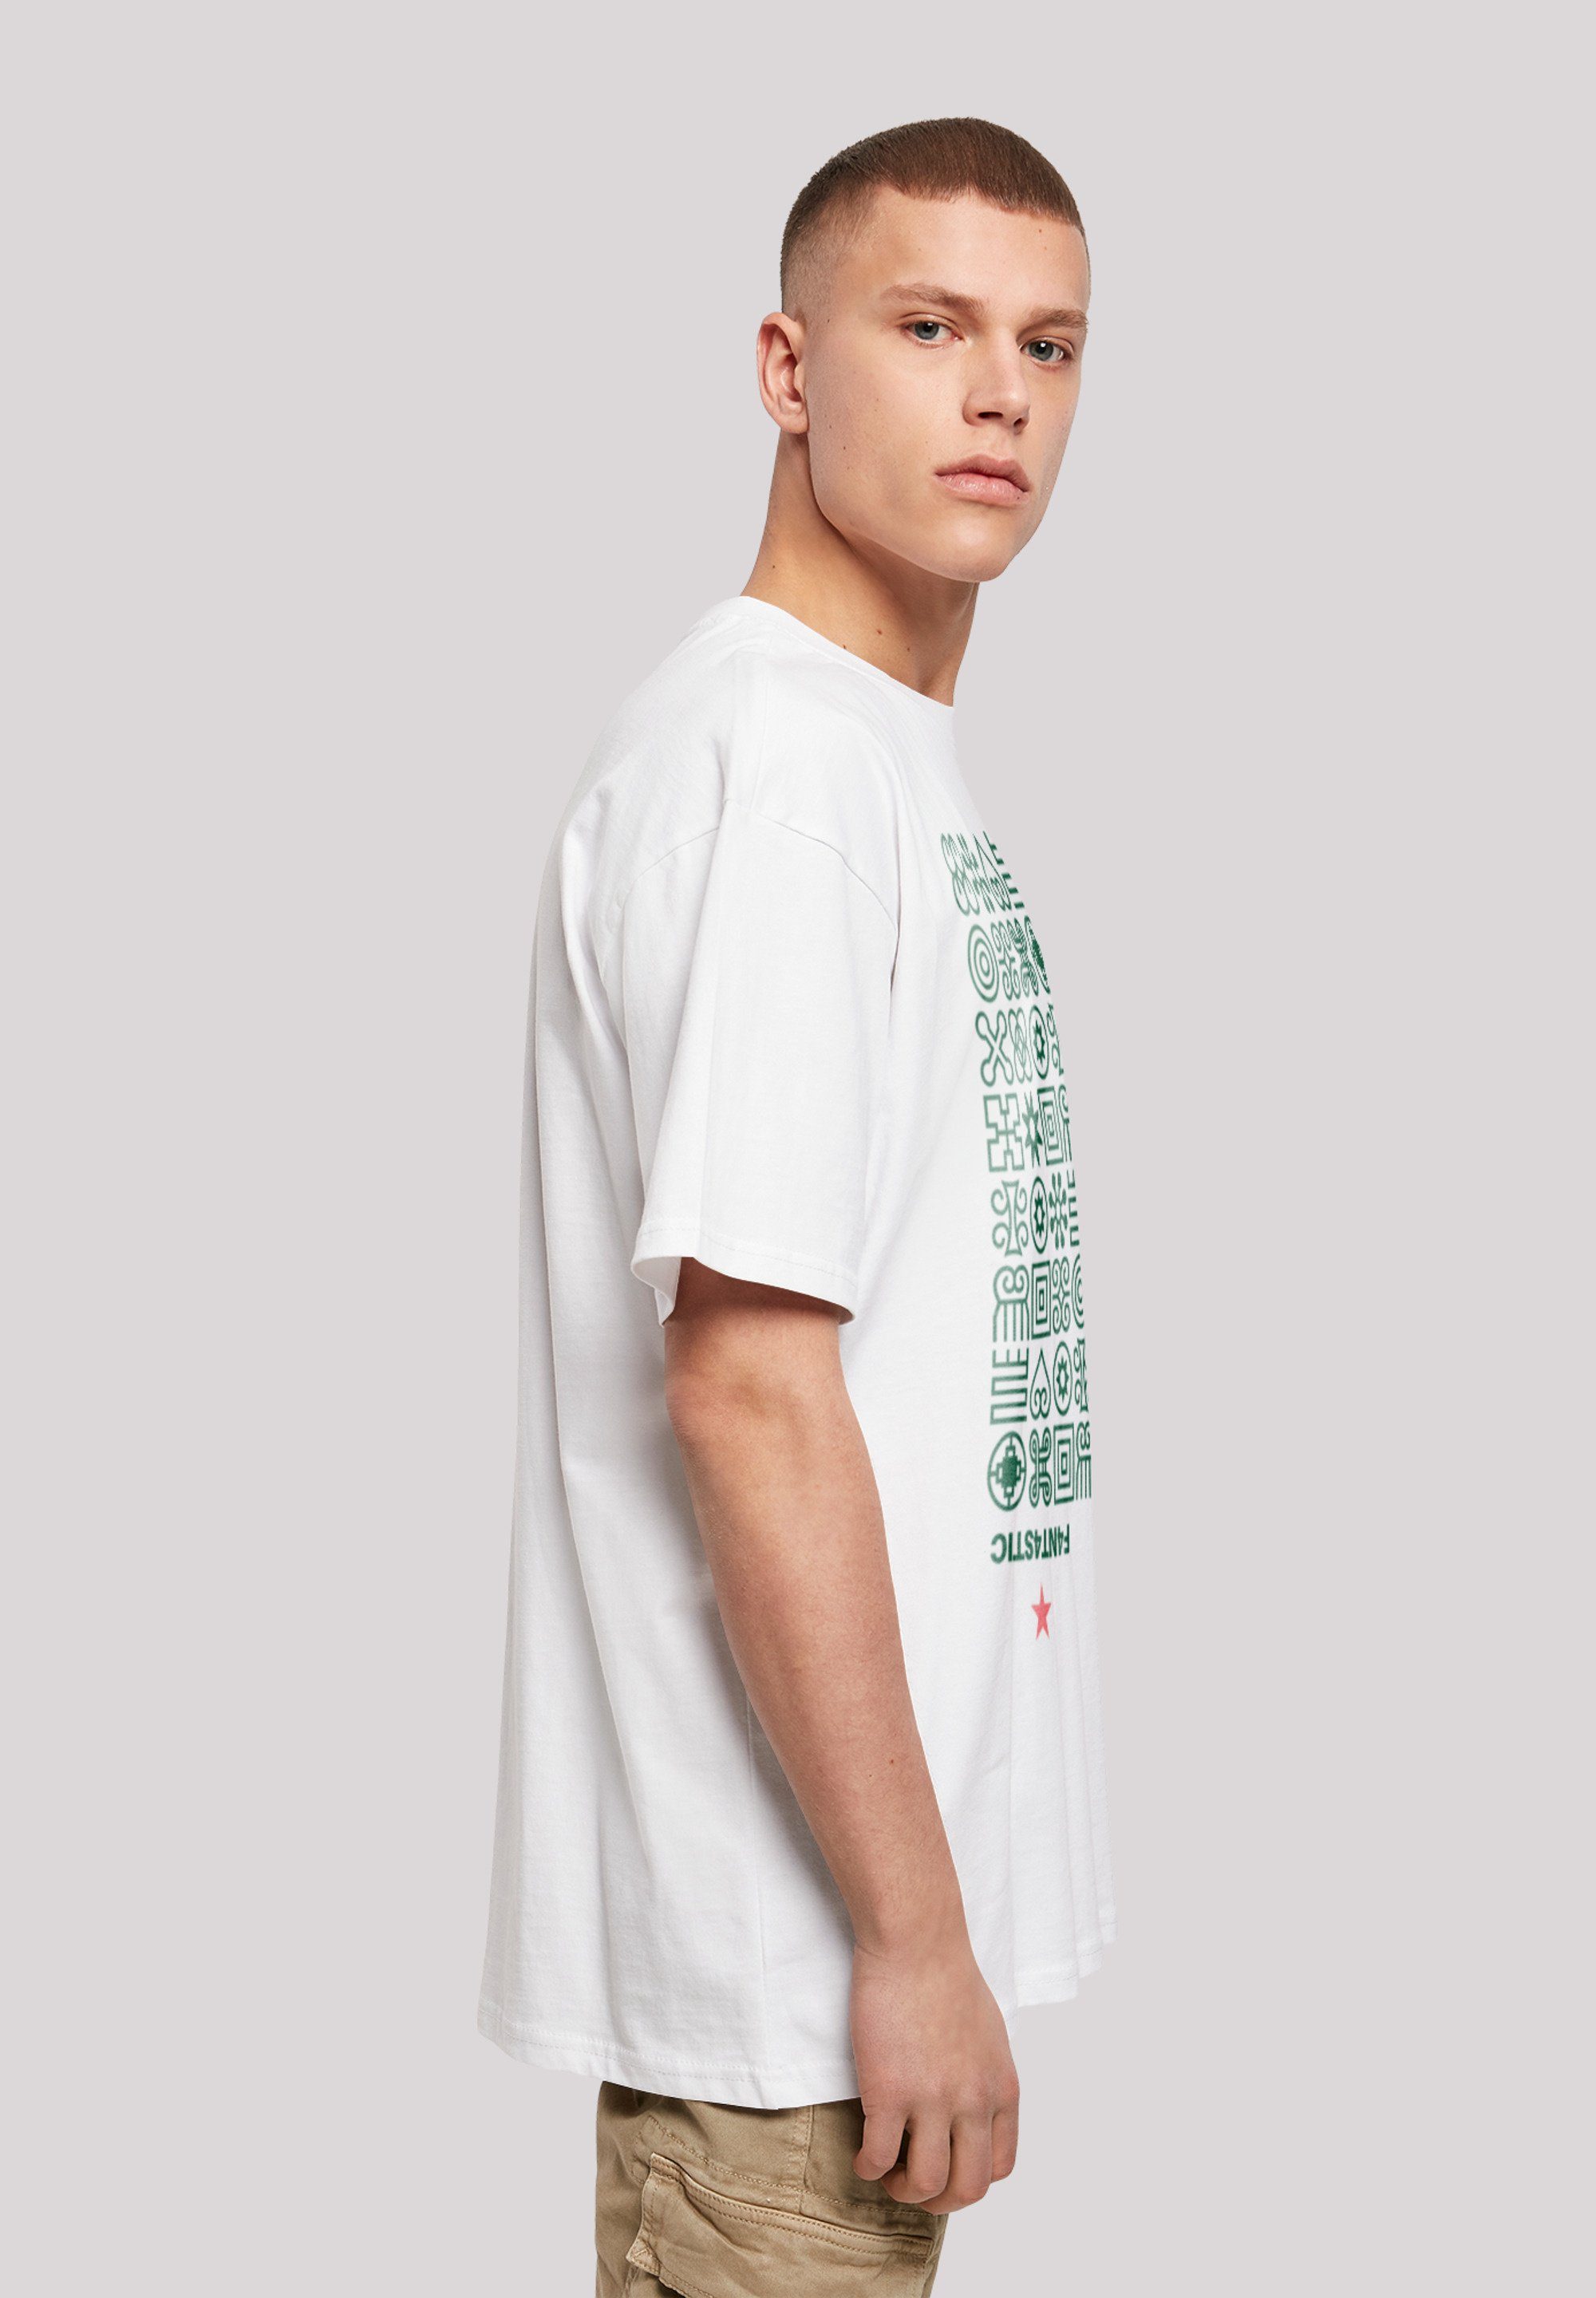 F4NT4STIC Muster T-Shirt Grün Symbole weiß Print